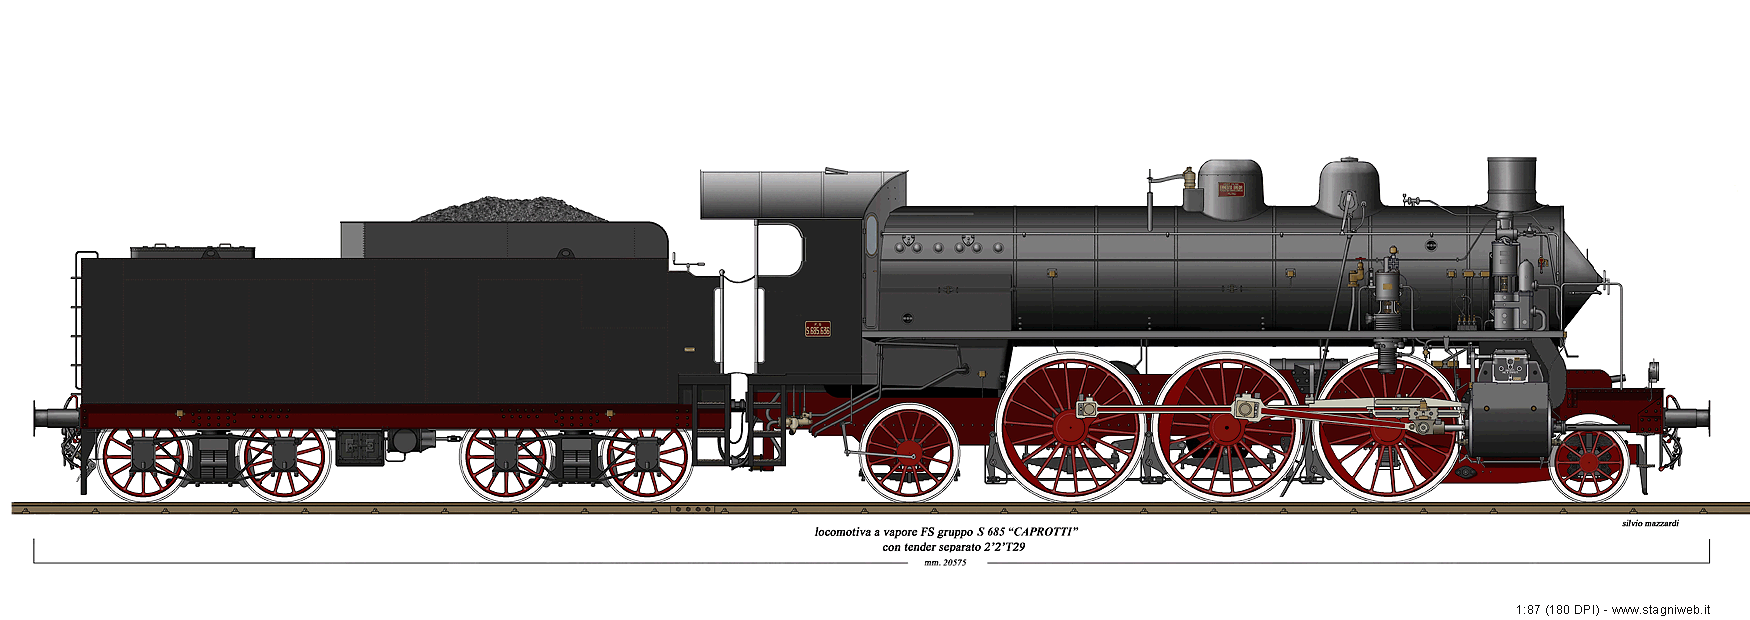 Locomotive a vapore con tender separato - Gr. S 685